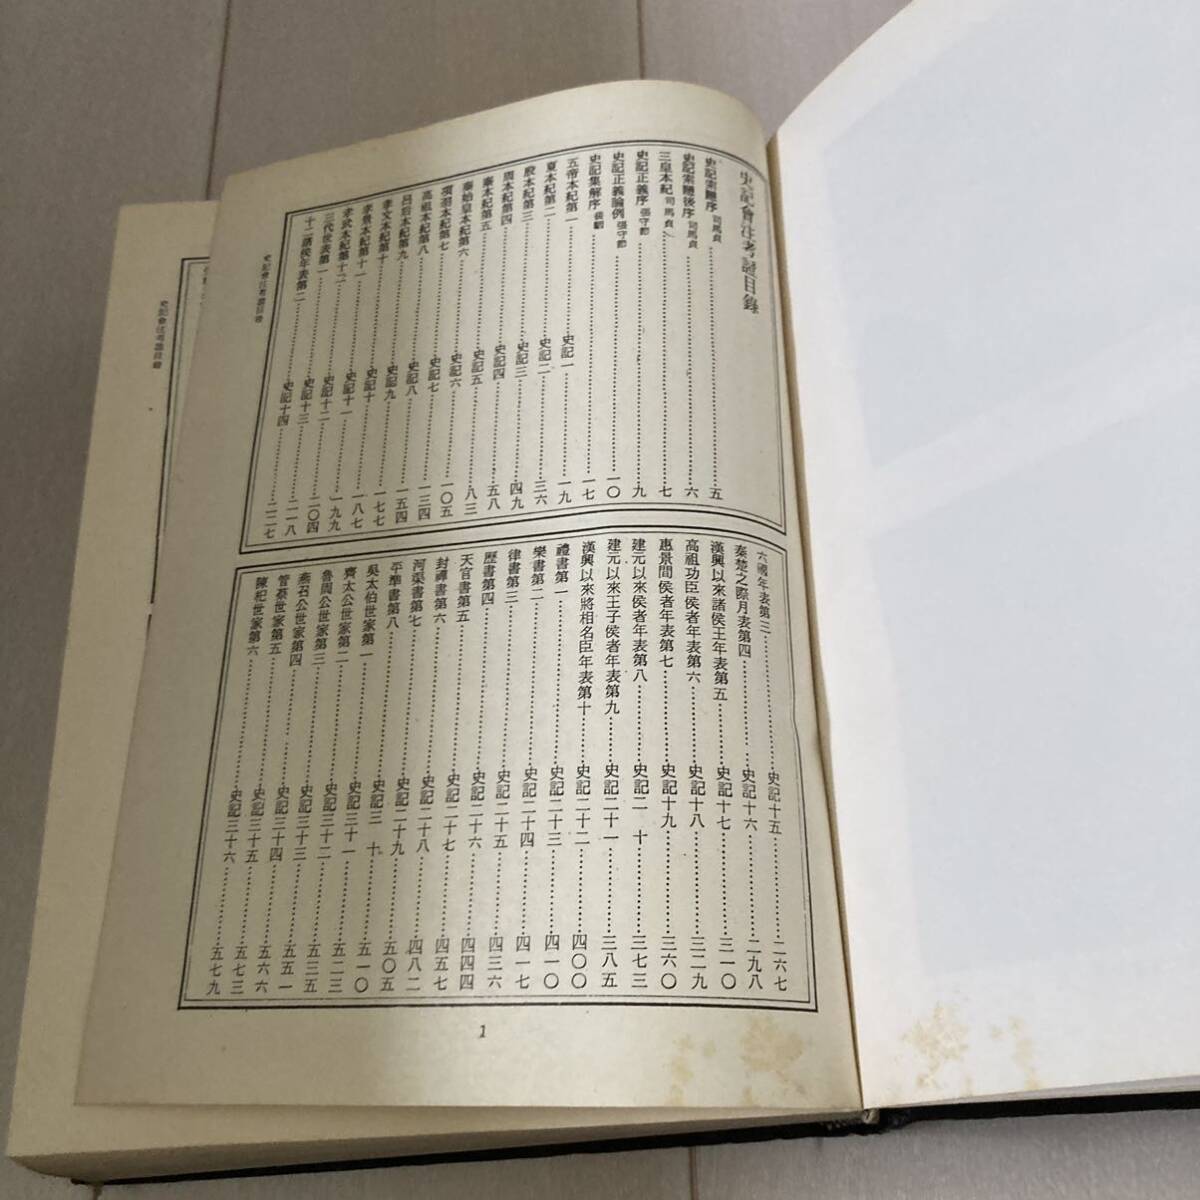 L 中華民国69年発行 中国 唐本 影印版 精装本 「史記會注考證」